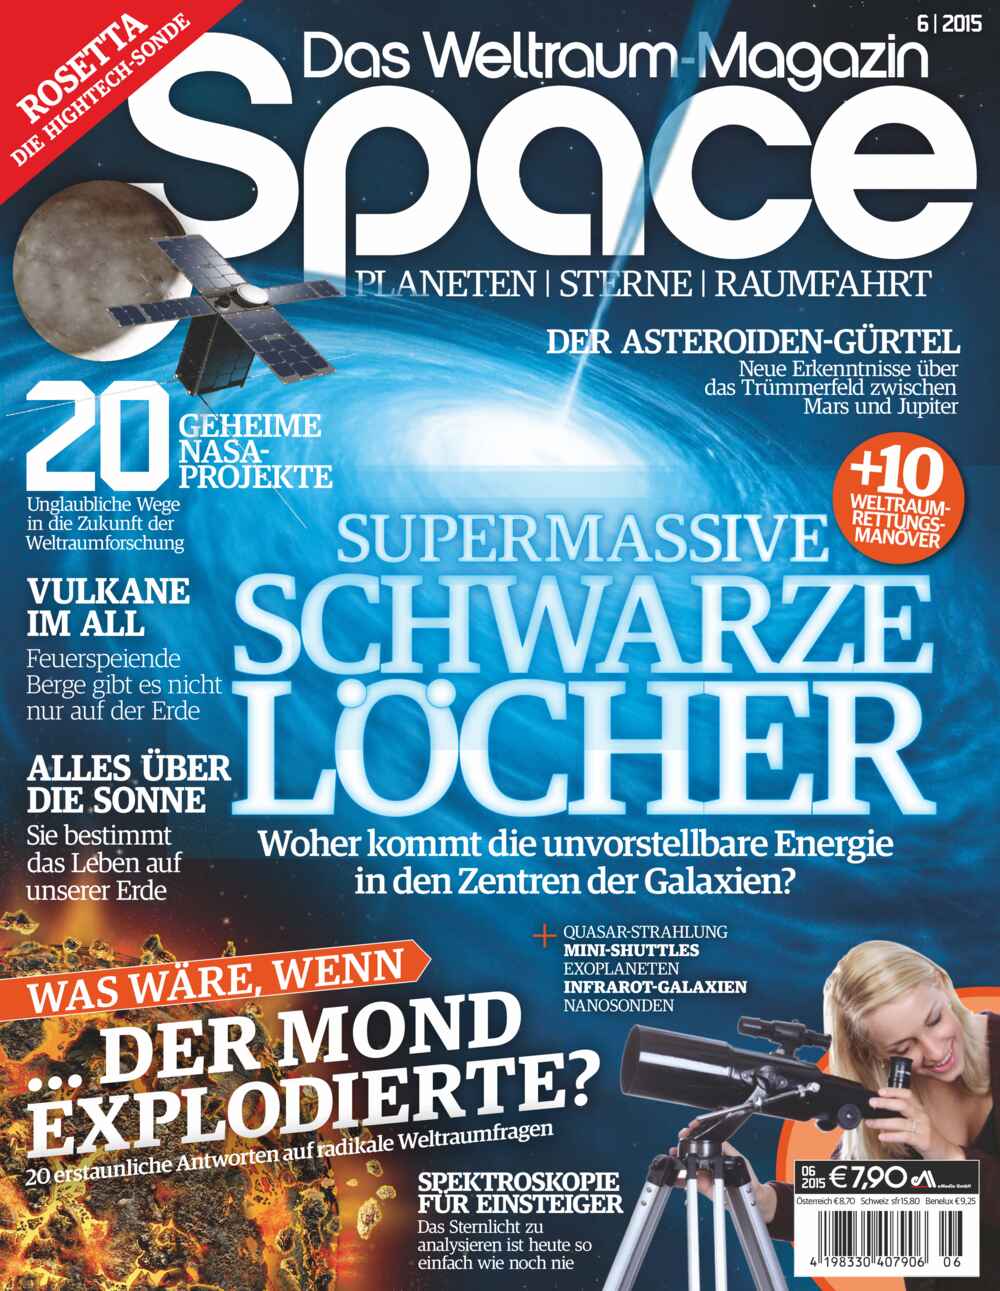 Space, Weltraum Magazin 06/2015